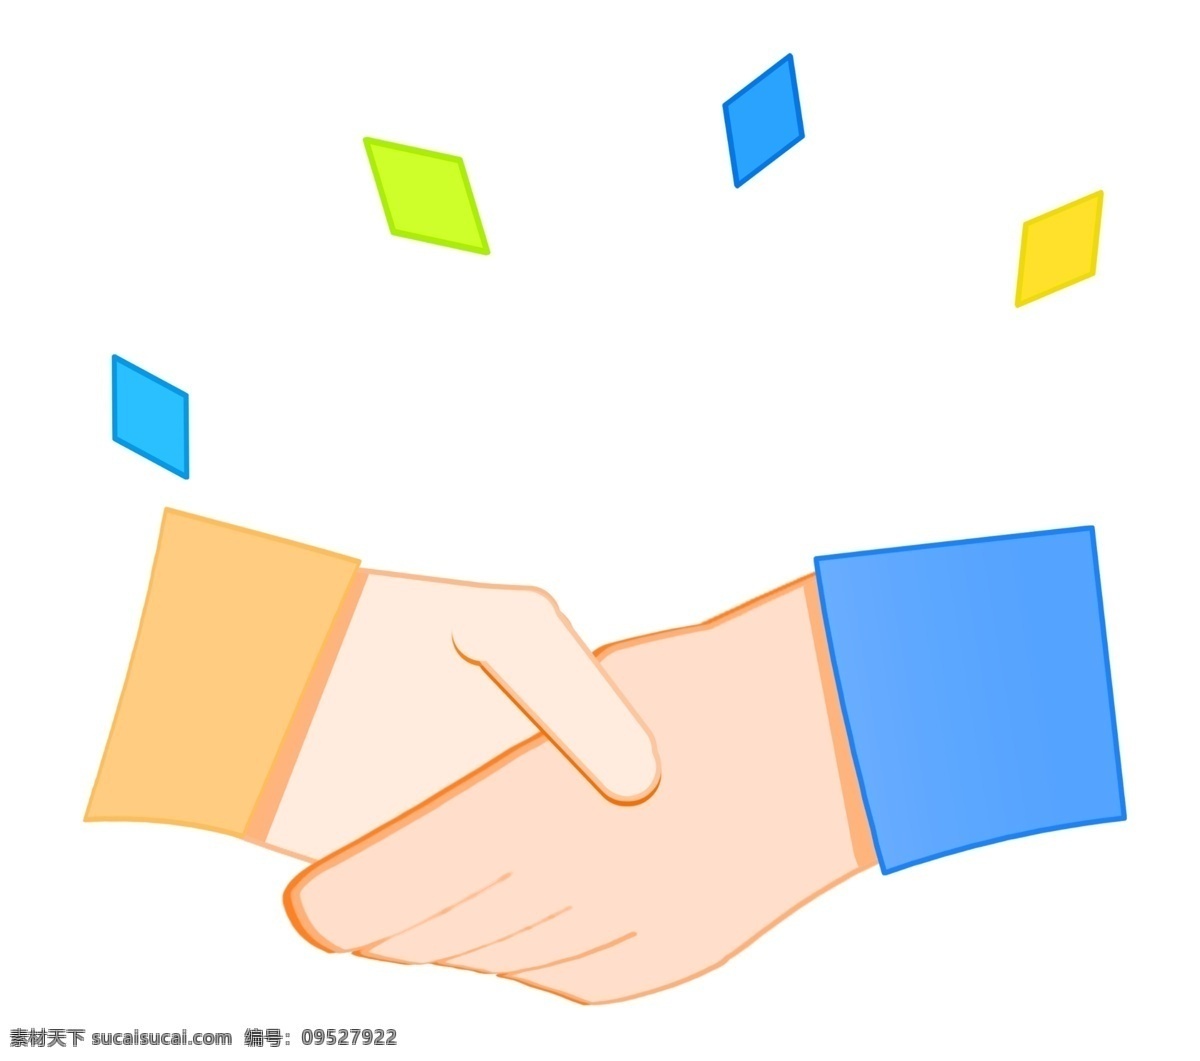 招聘人才 握手 插画 彩色的纸片 两个人握手 蓝色的袖口 橘黄色袖口 卡通合作装饰 招聘人才插画